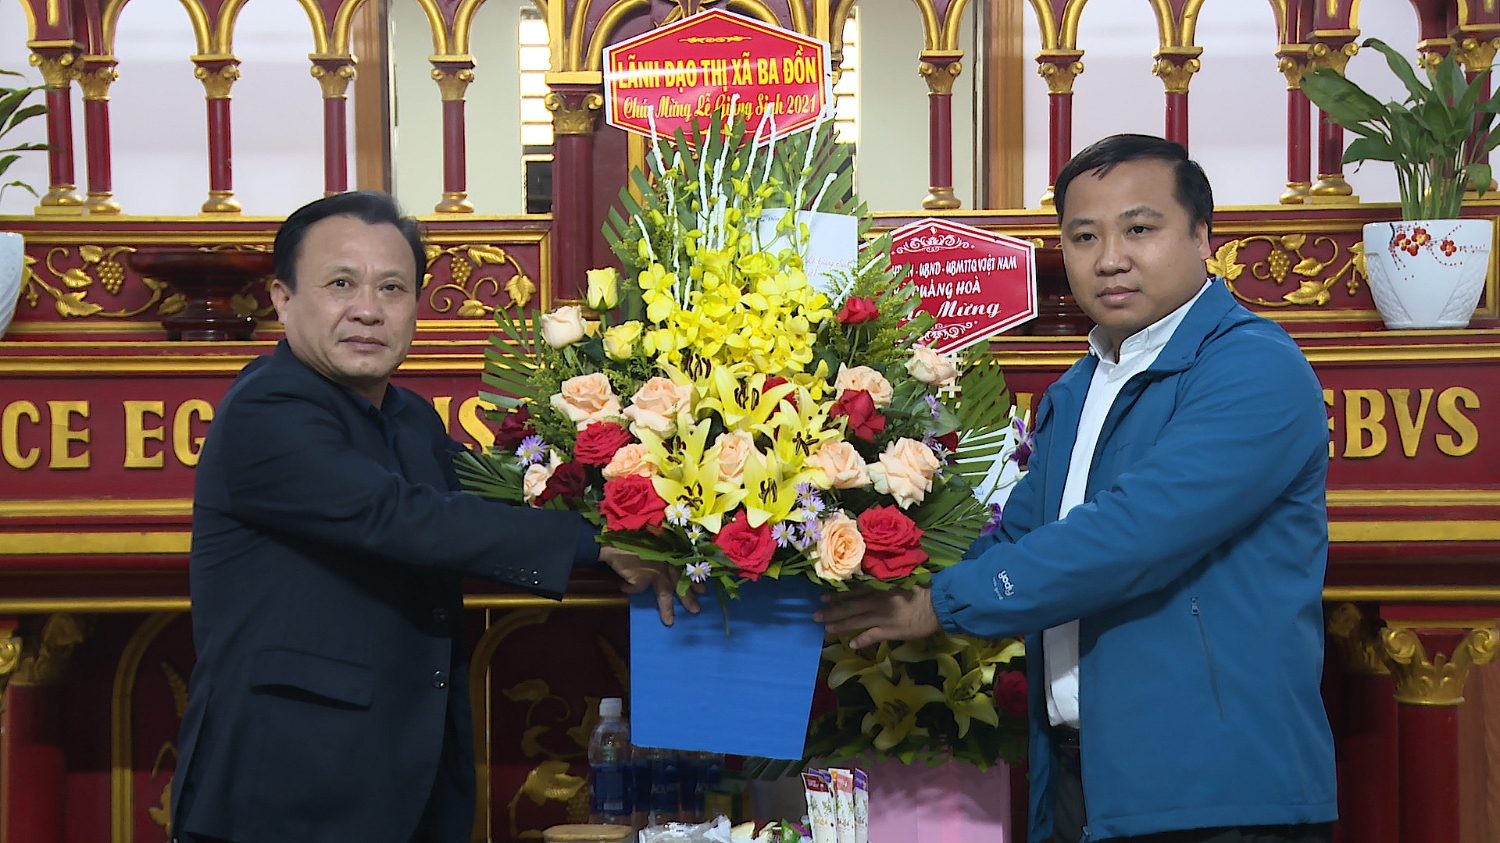 Đồng chí Phạm Duy Quang, Phó Bí thư Thường trực Thị ủy, Chủ tịch HĐND thị xã thăm hỏi và tặng quà tại giáo họ Hòa Đồng